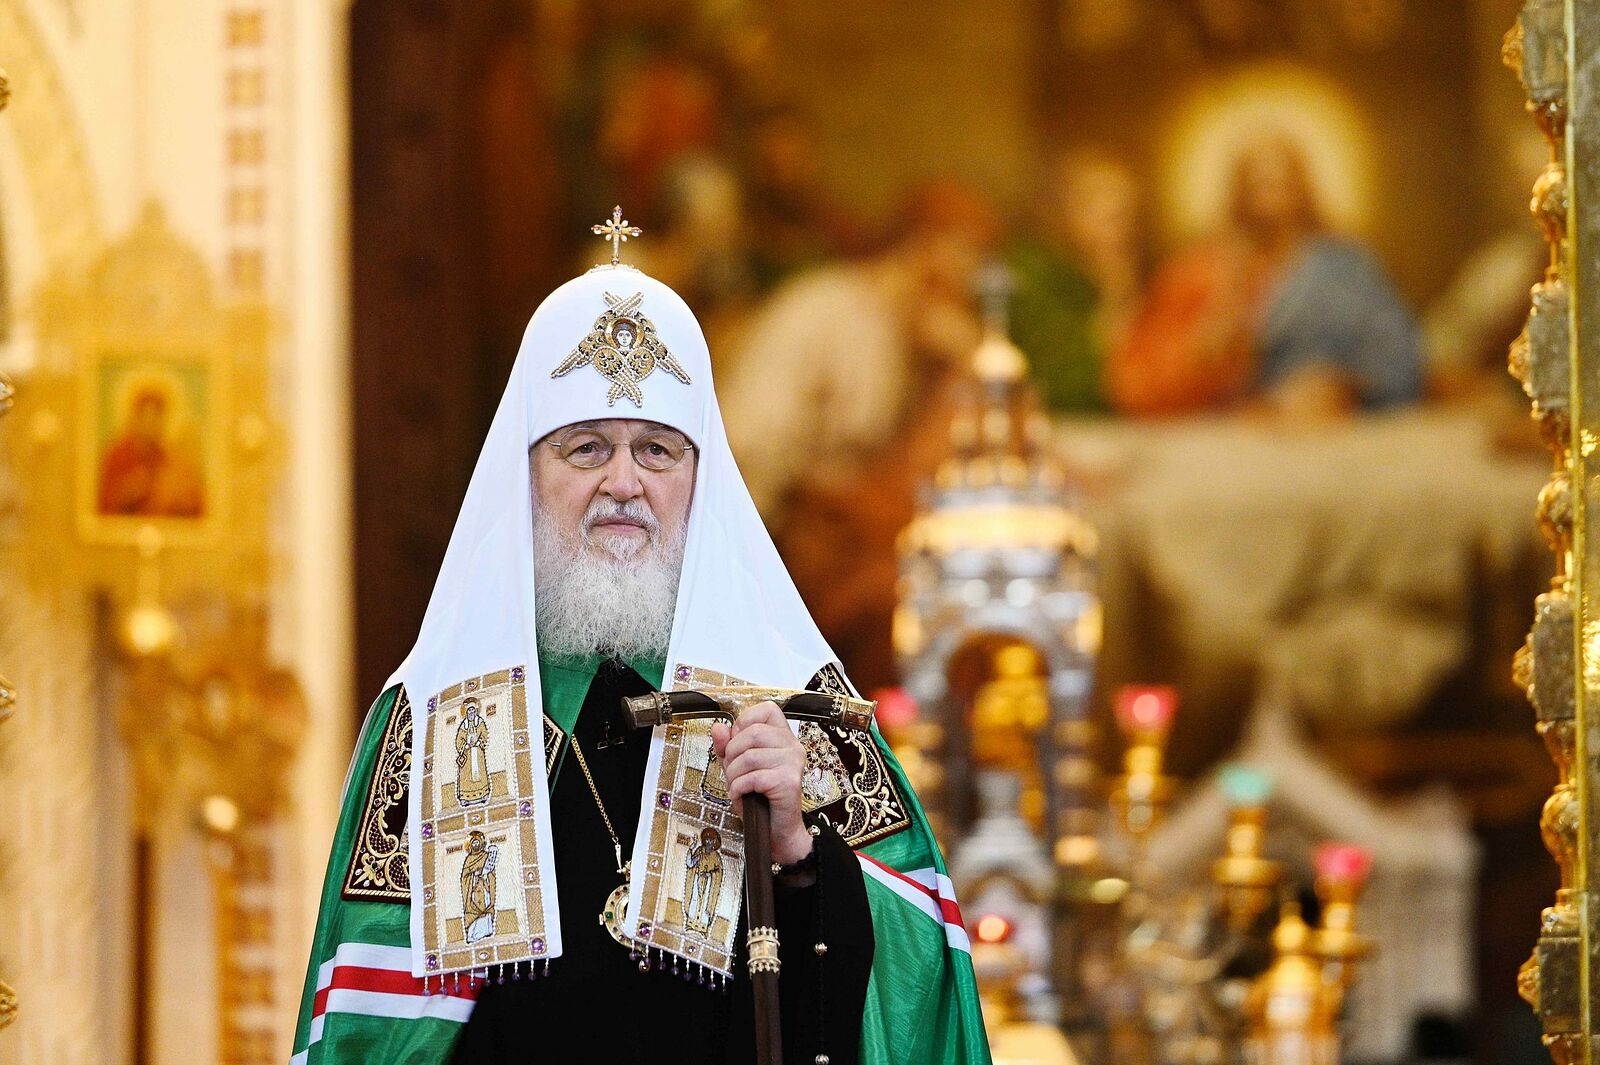 Vladimir legoyda : « les tentatives d’intimider le primat de l’Église orthodoxe russe ou de le forcer à renoncer à ses opinions sont insensées, absurdes et peu prometteuses »